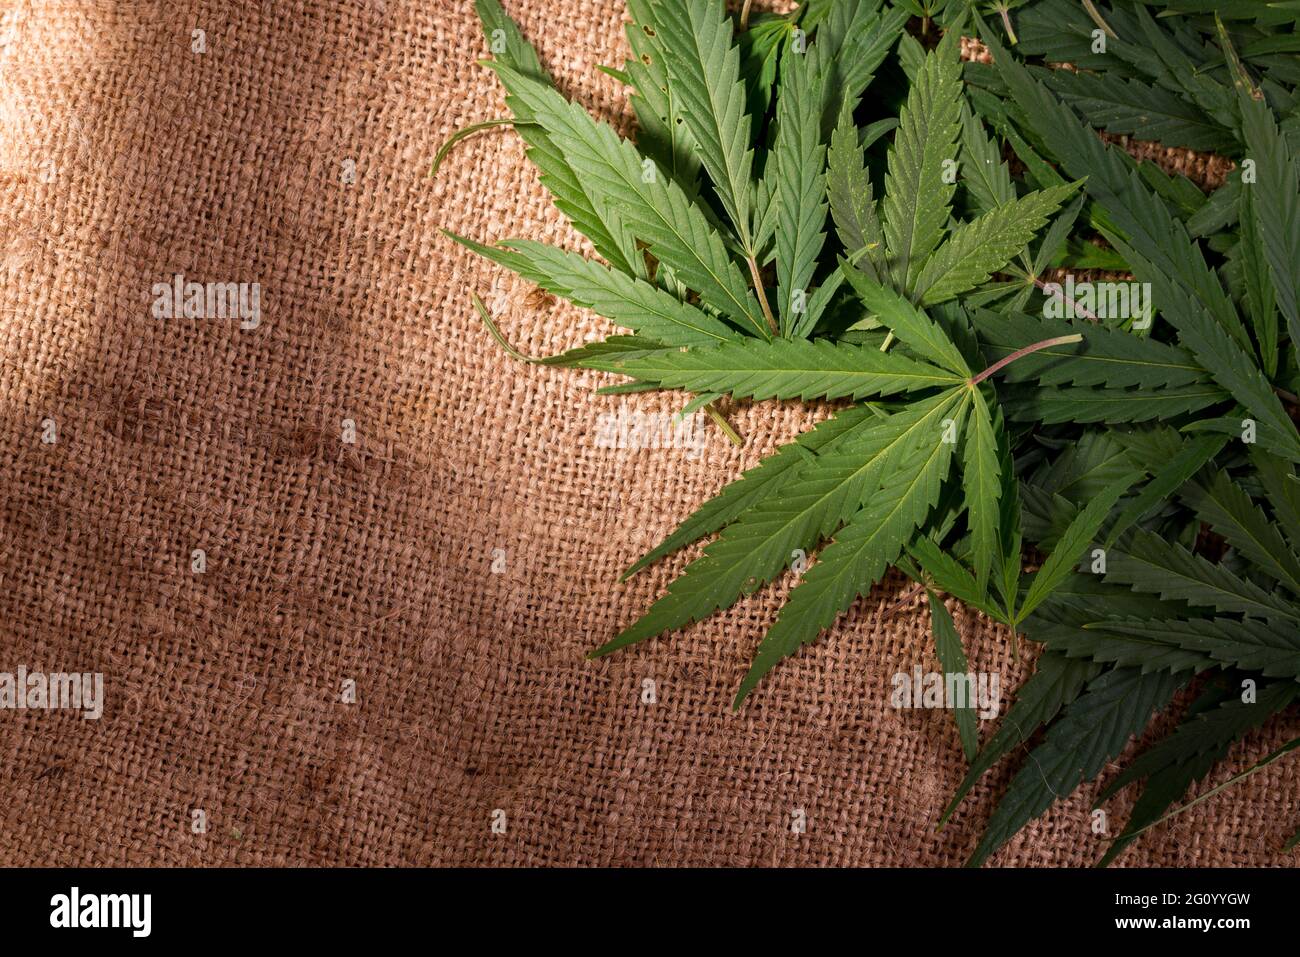 Foglie giovani di cannabis verde sulla superficie del sacco. Tema crimine e punizione per il possesso di narcotici. Foto Stock